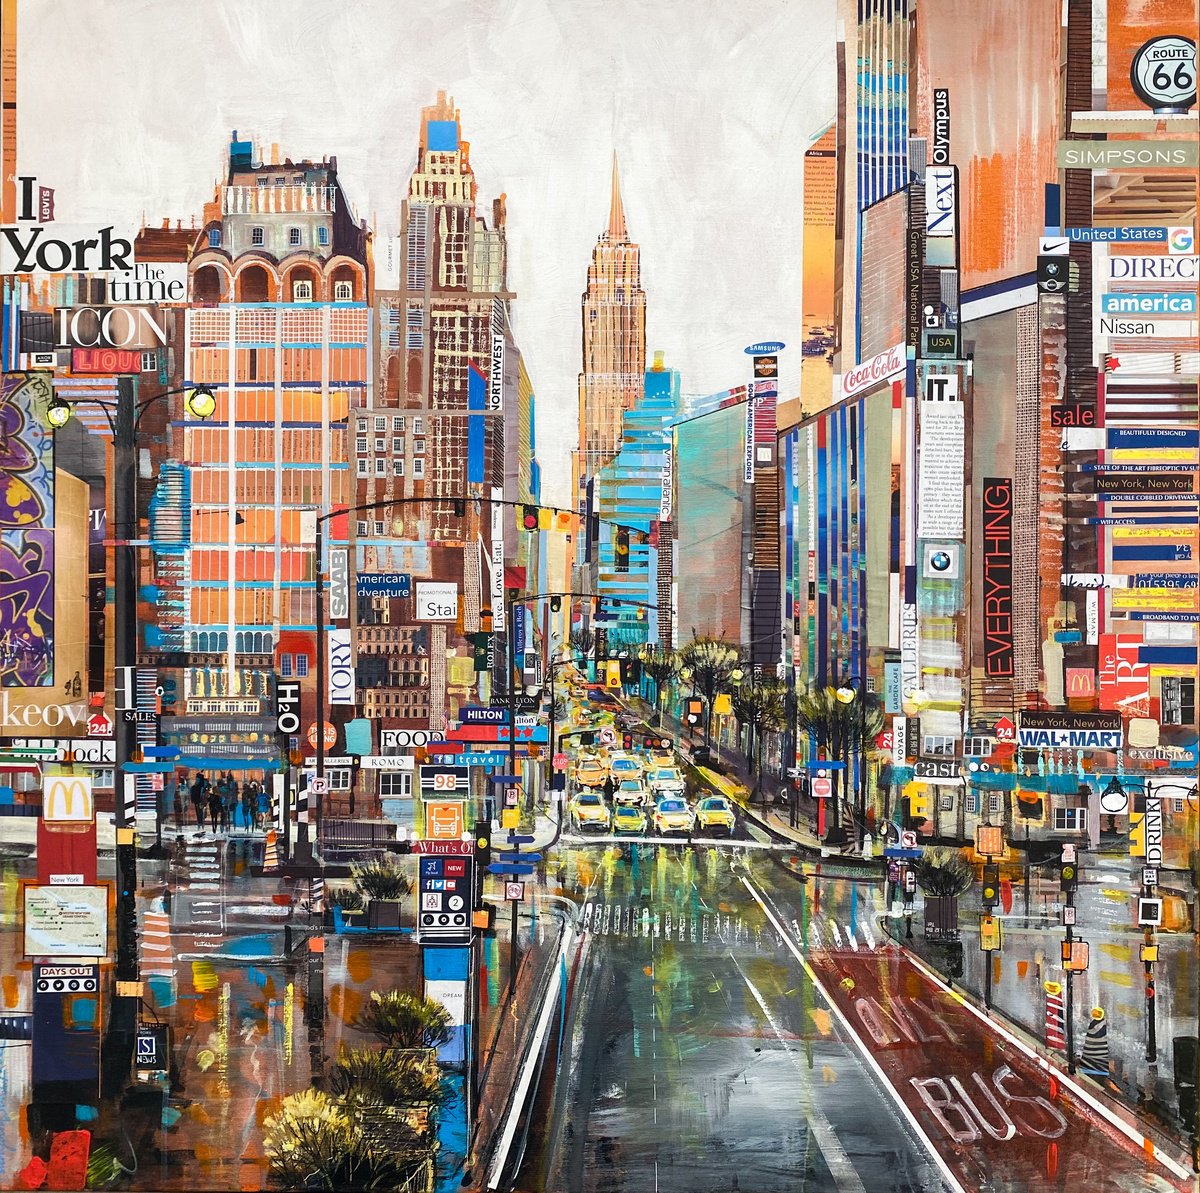 New York - Midtown Manhattan by Irina Rumyantseva